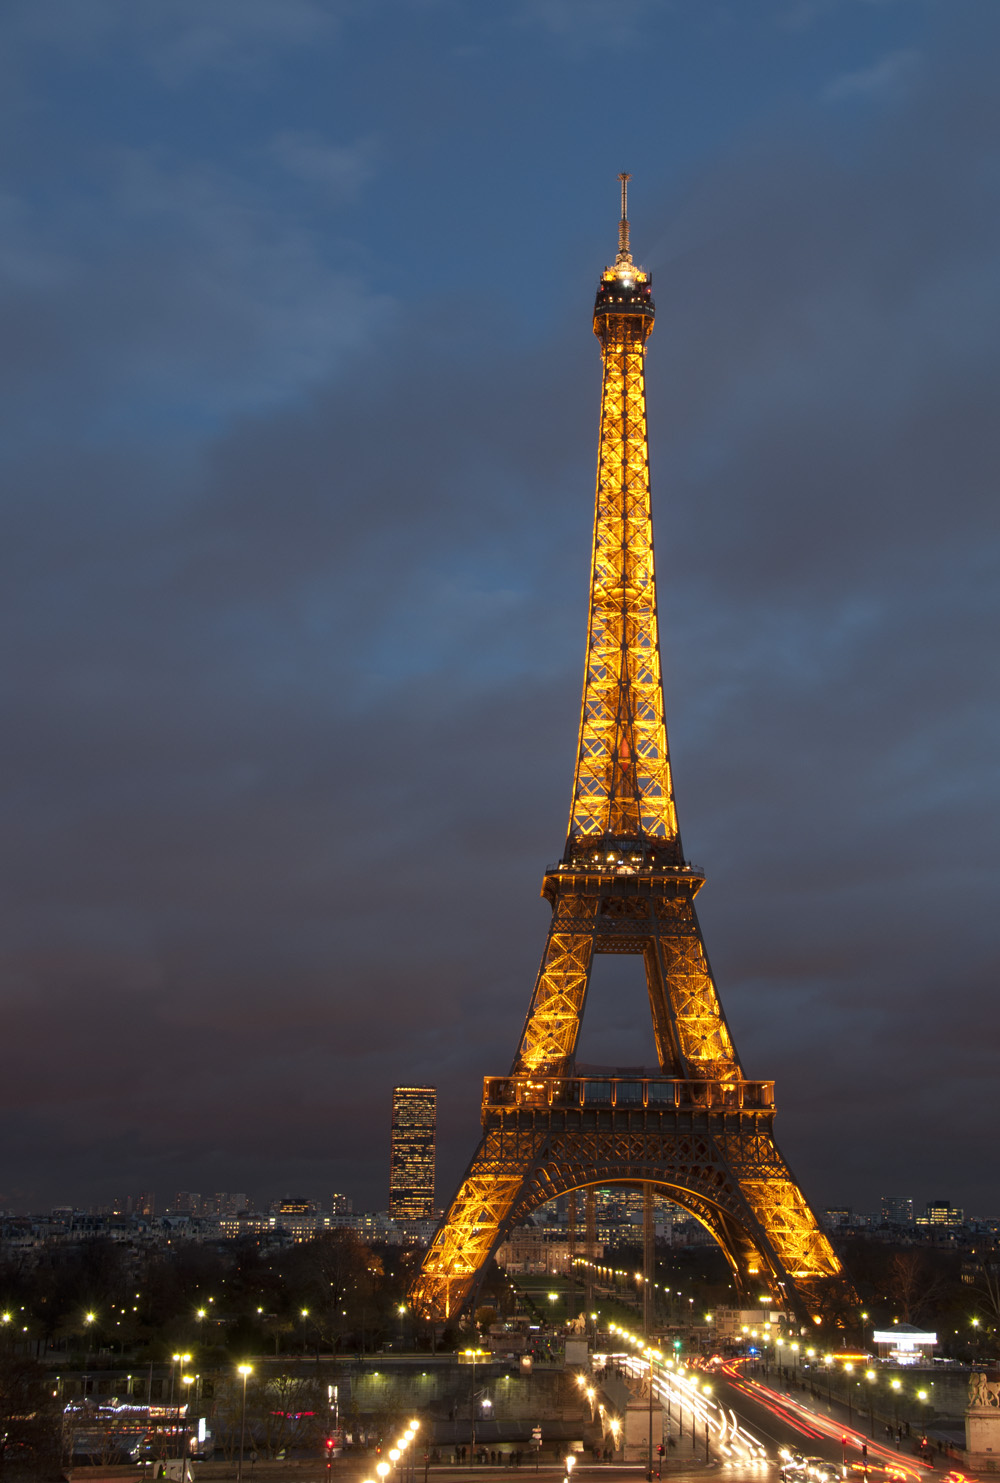 Eiffel Tower (f11 / 3 sec / 160 ISO)